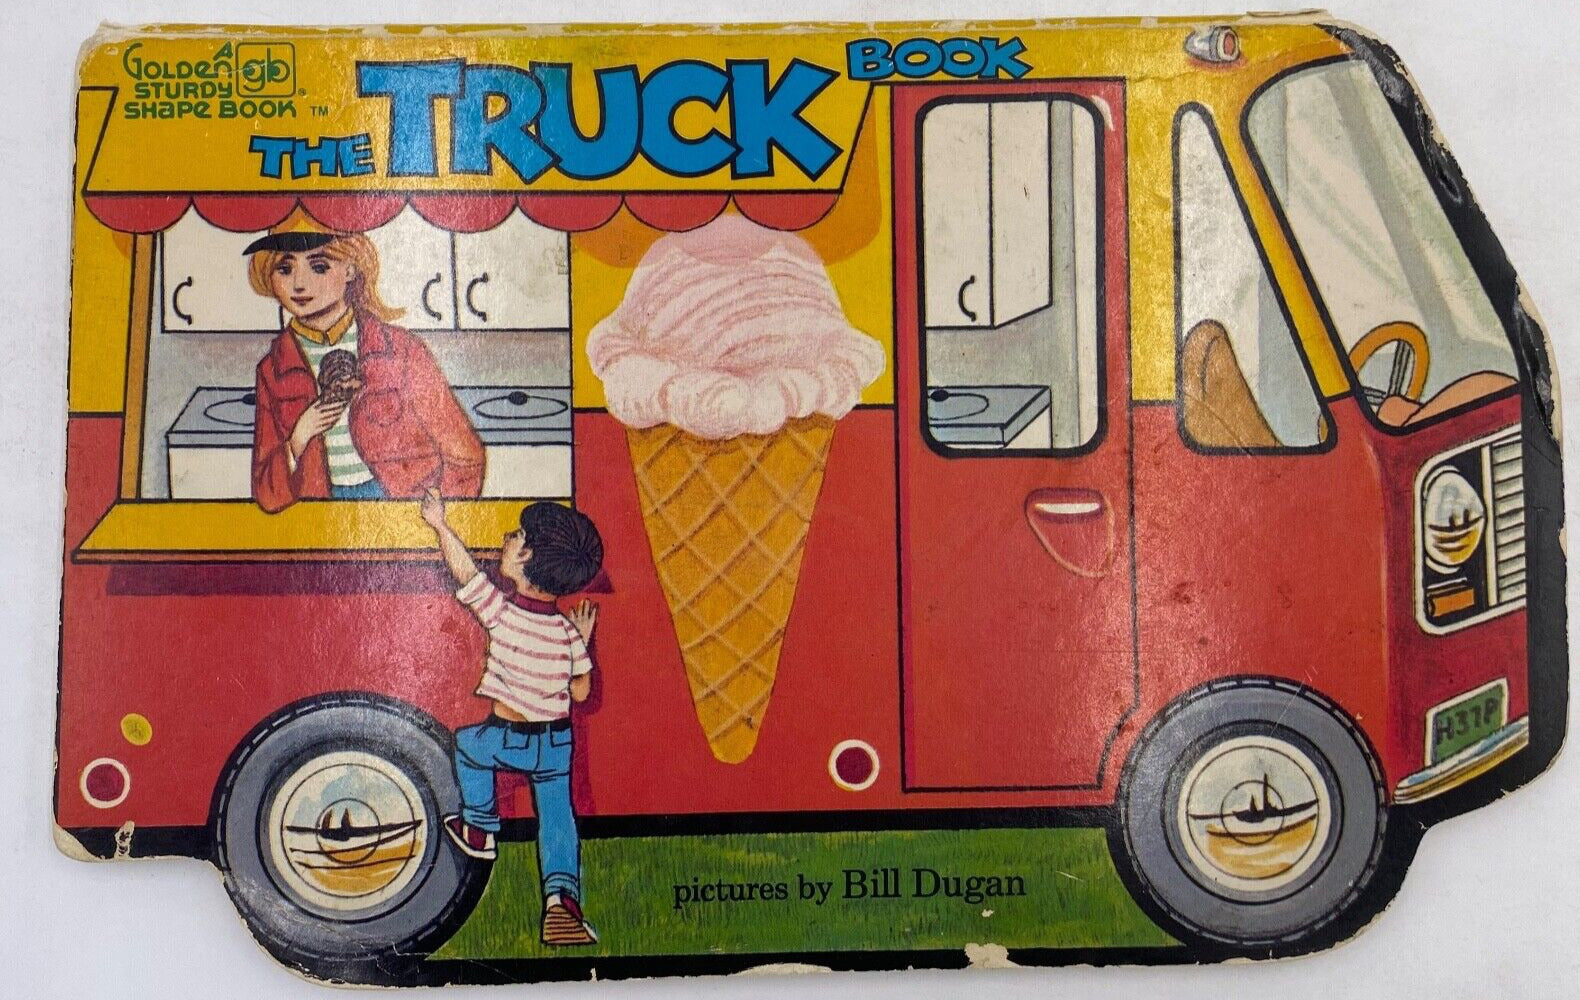 The Truck Book - Bill Dugan - A Golden Study Shape Book 1980